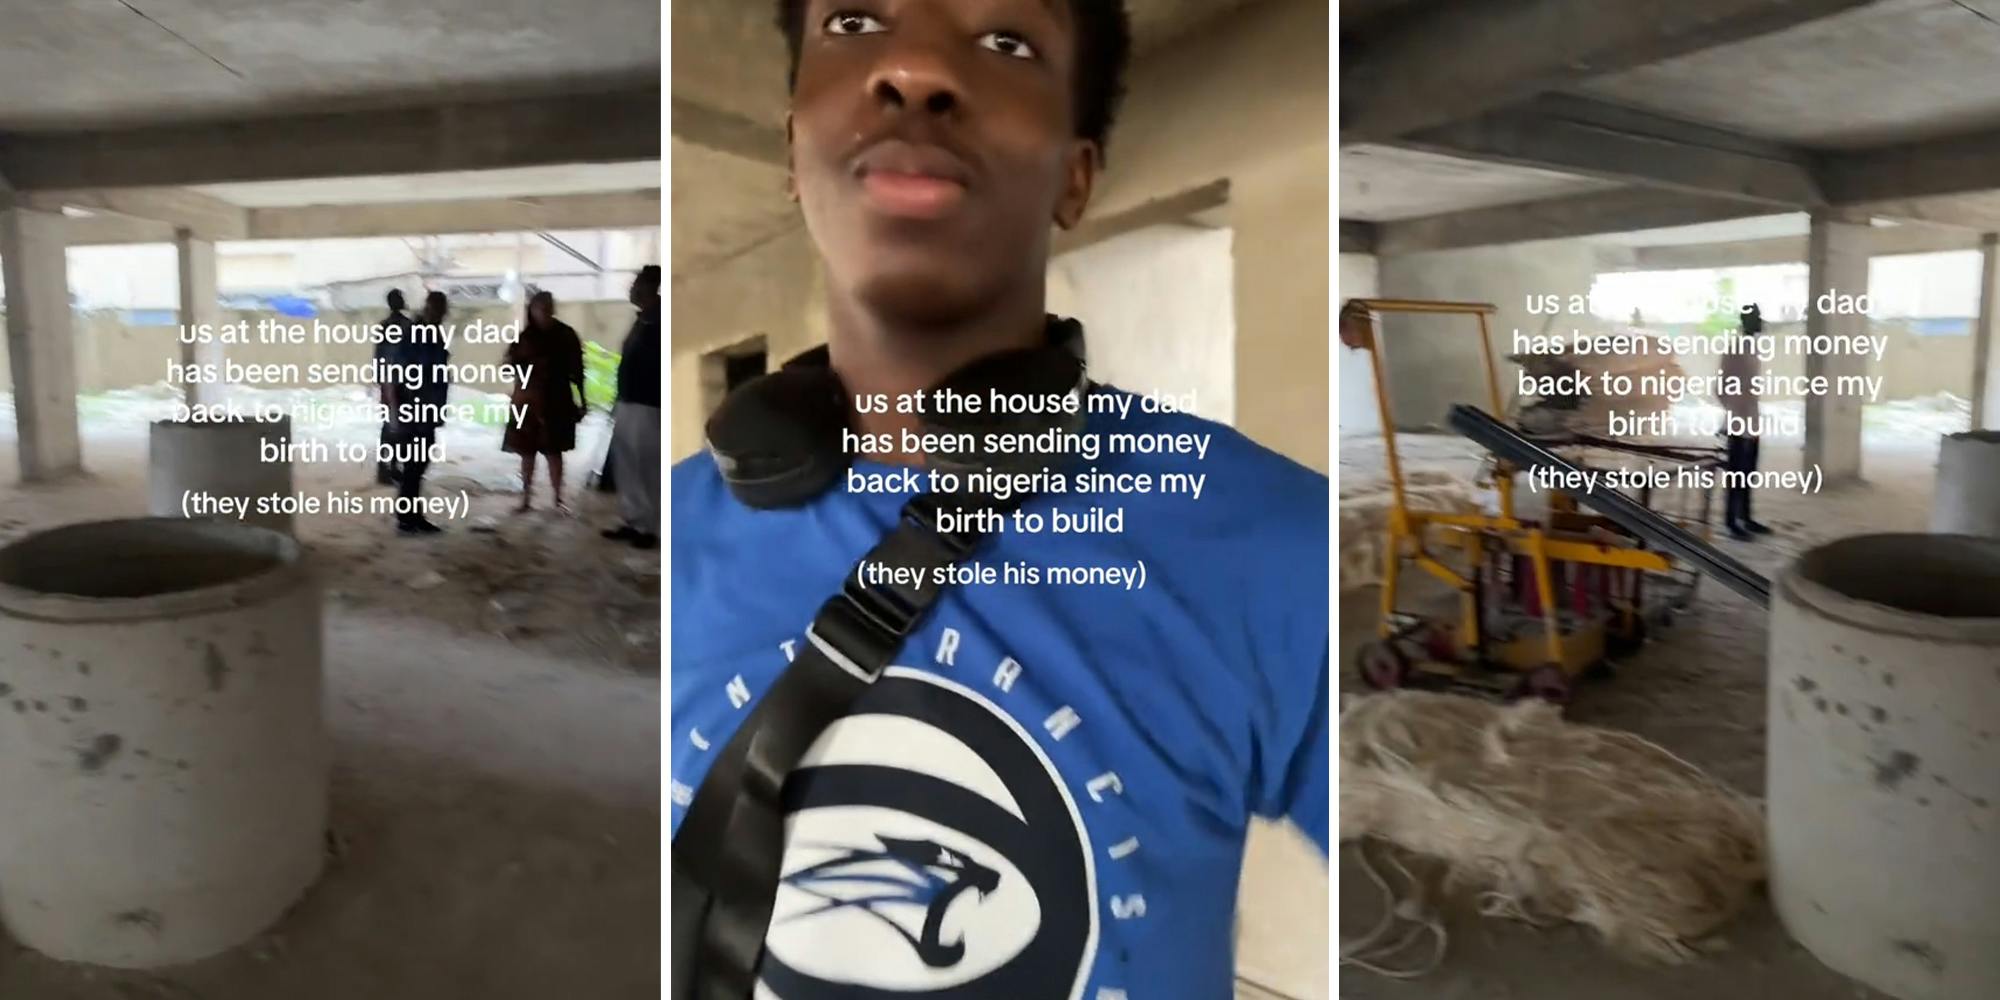 De zoon bezoekt het huis van zijn vader in Nigeria.  Het is een ramp